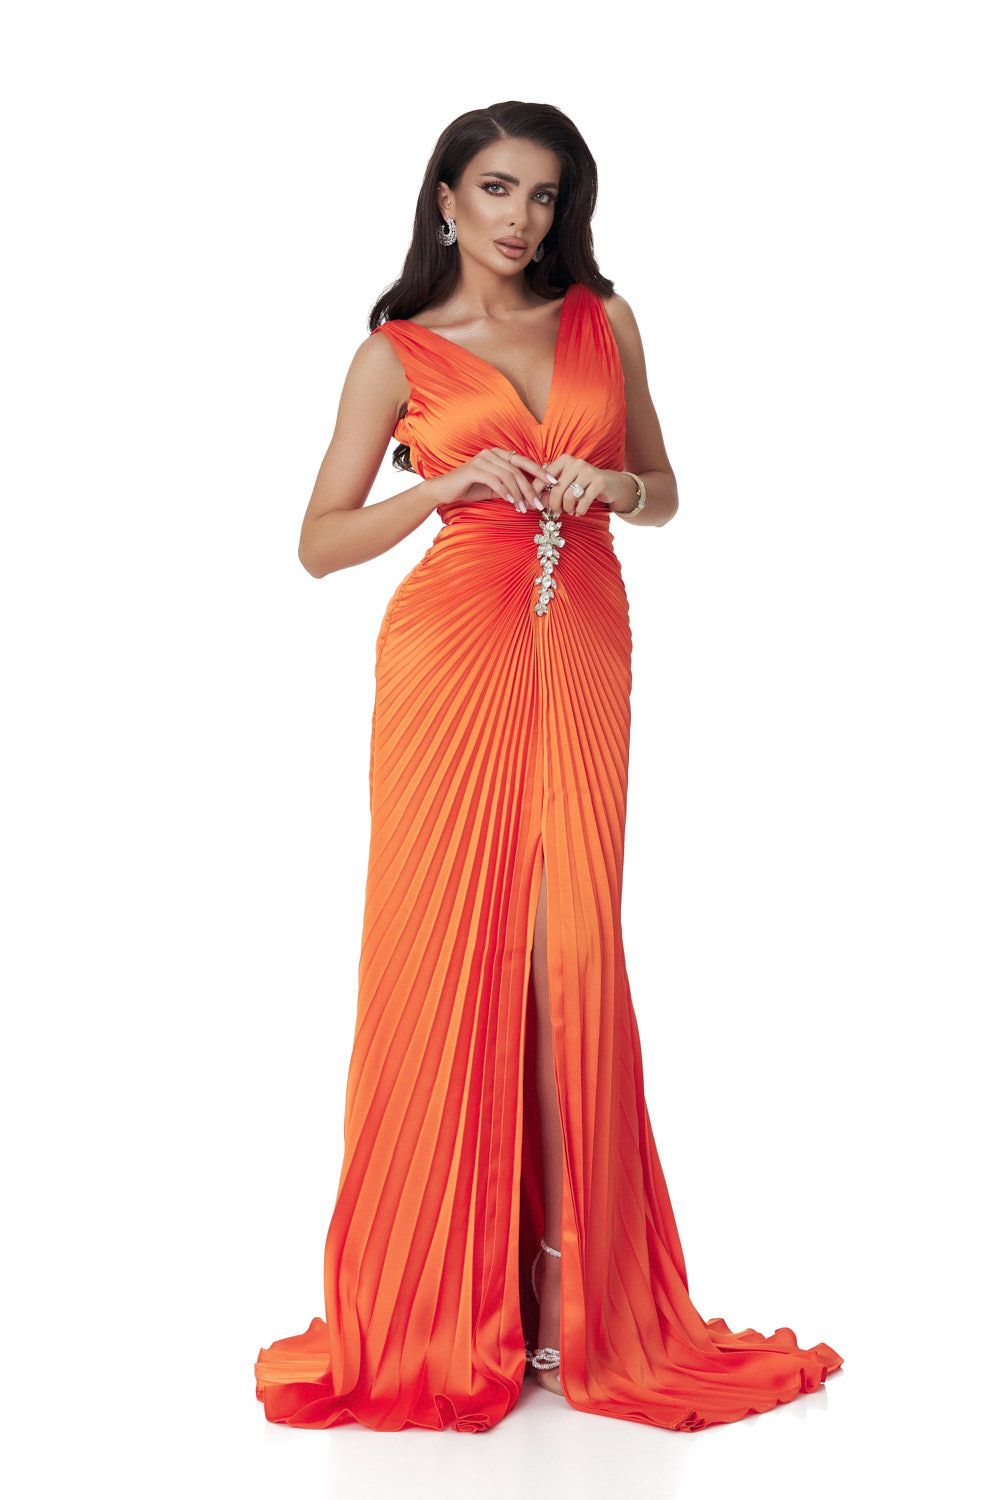 Long orange satin veil dress for women by Omana Bogas